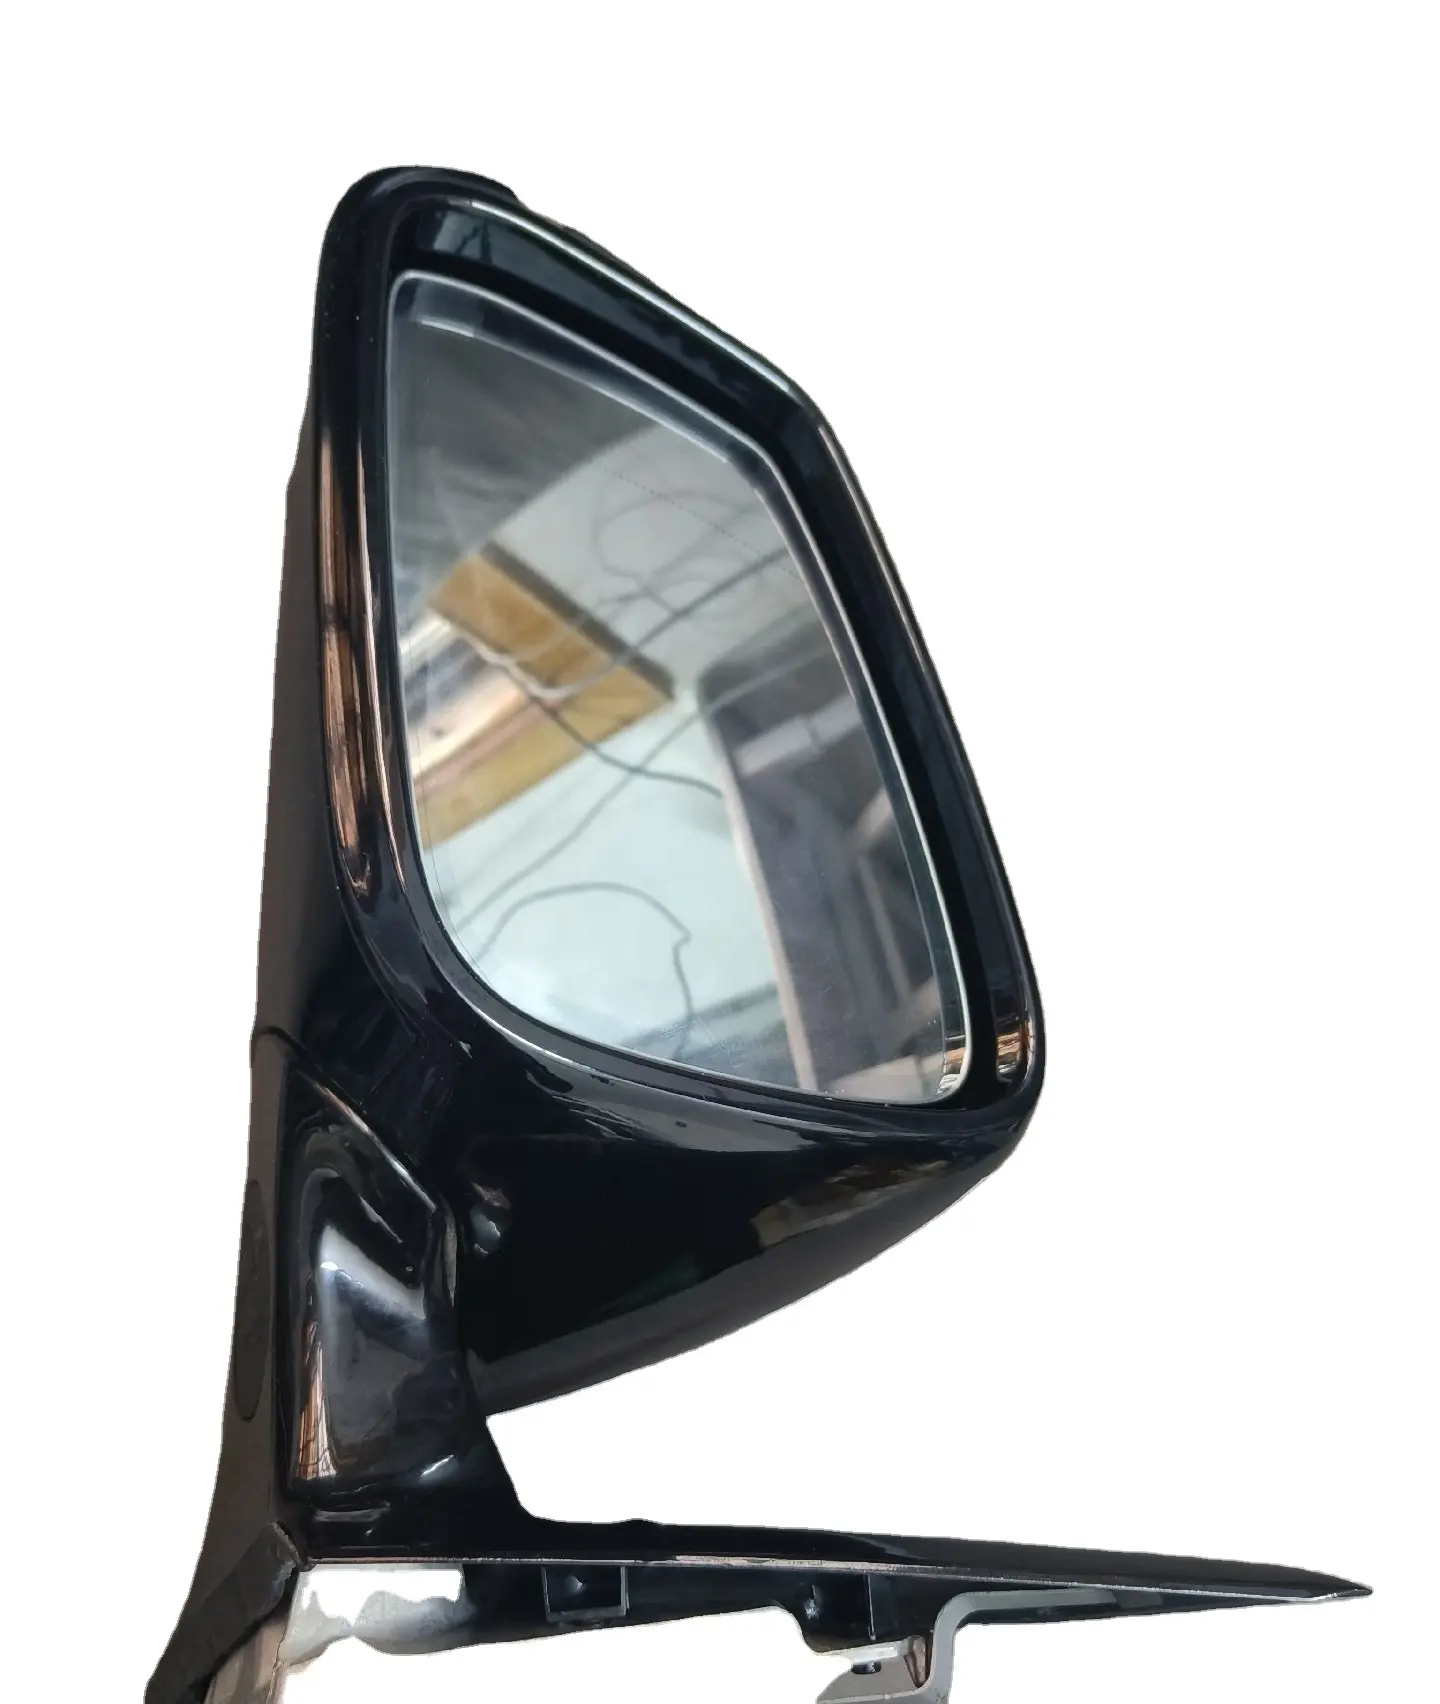 Oem Original PMMA Abs Plástico Auto Porta Do Carro Retrovisor Espelhos Laterais para bmw 3 série espelho lateral f30 f31 f35 carro blind spot espelho